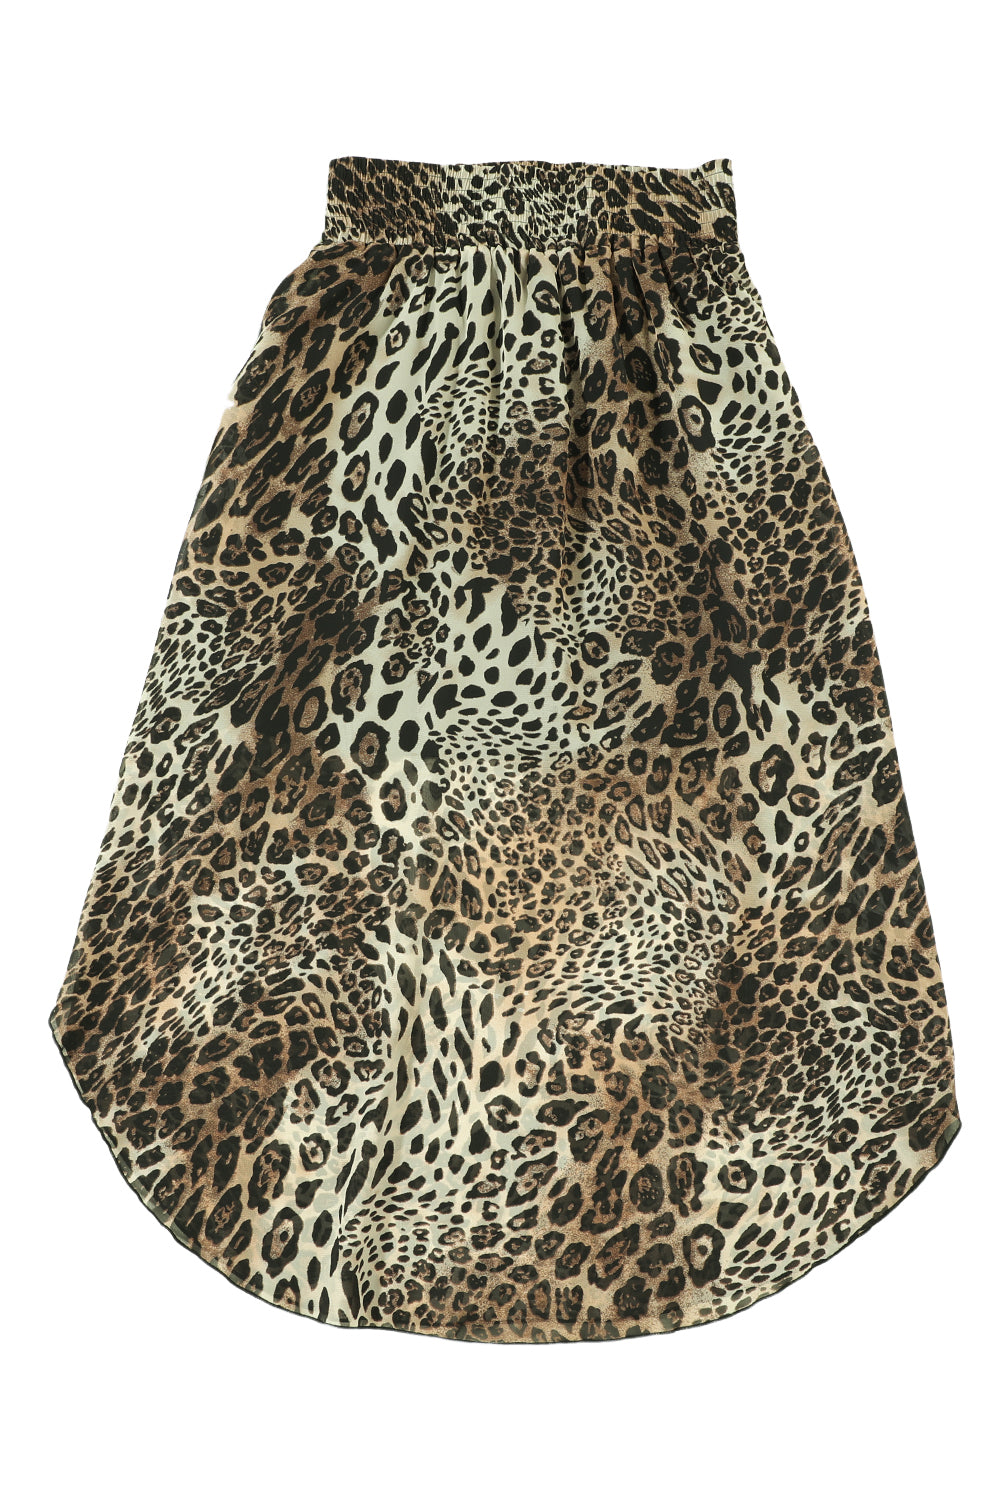 Jupe léopard taille smockée